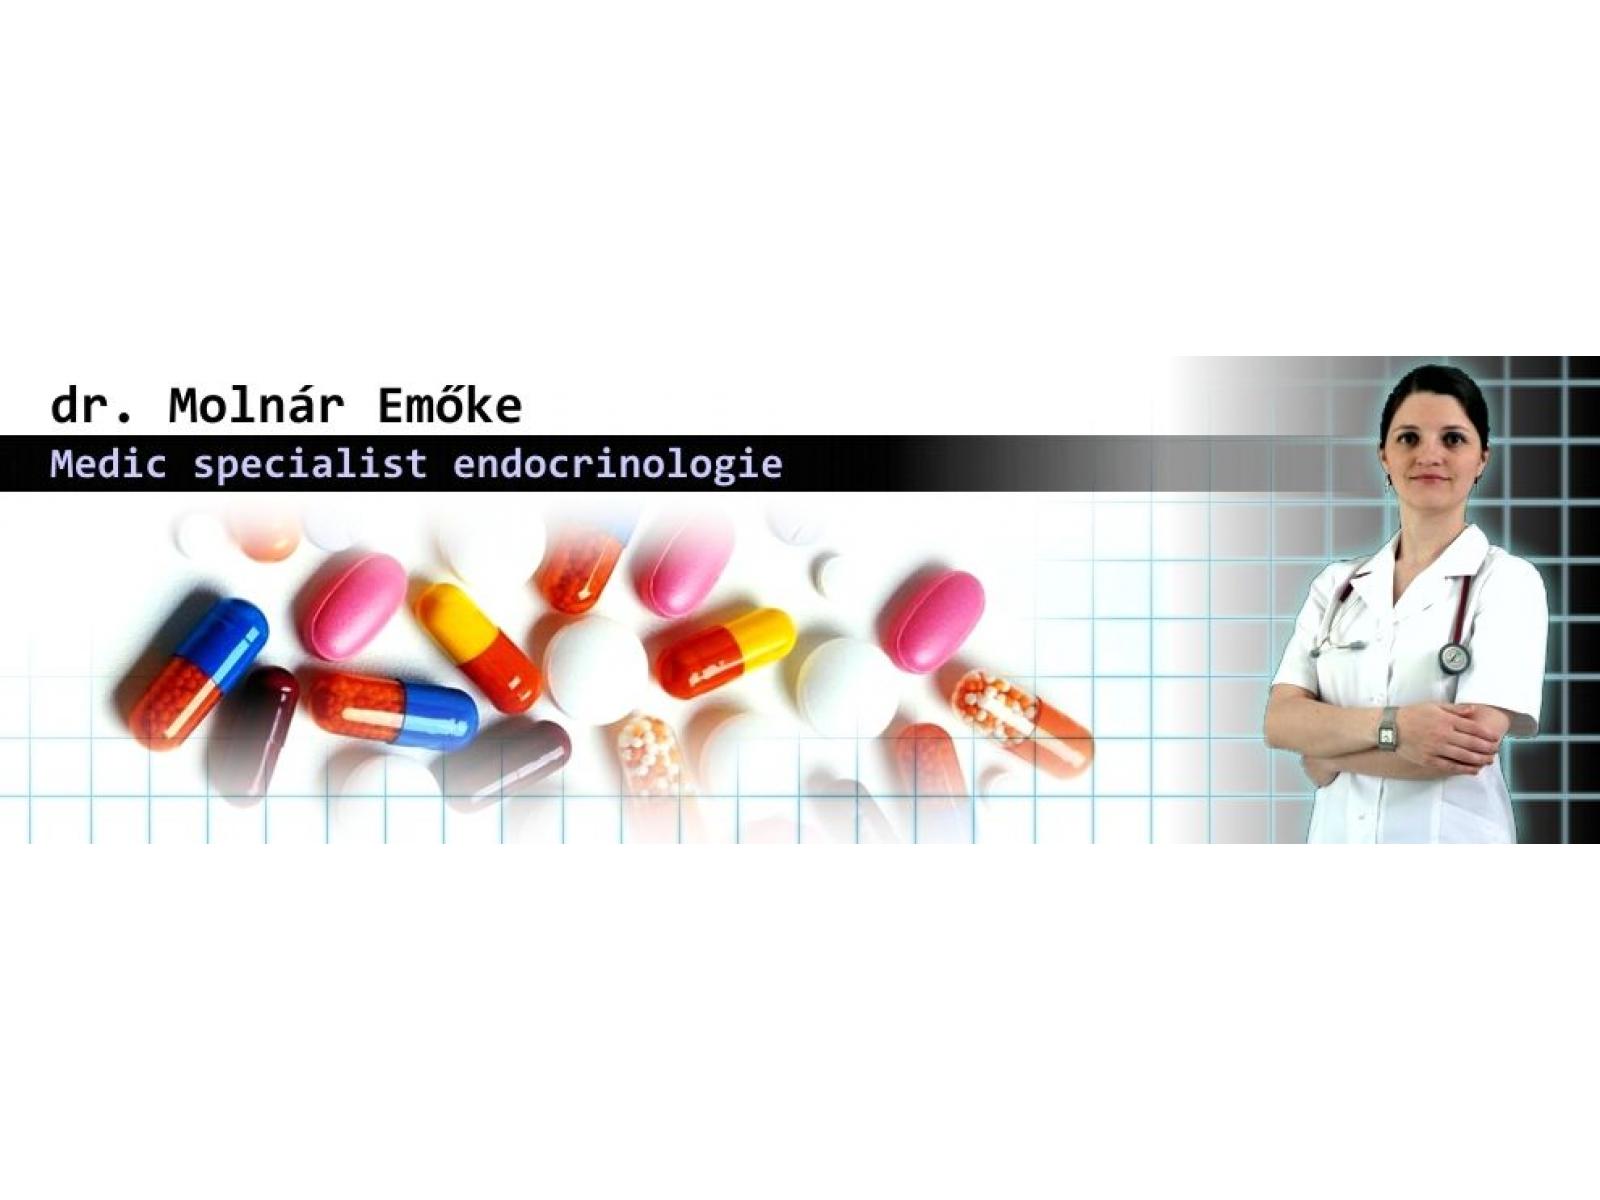 Endocrinologie Dr. Molnar Emoke - header_ro.jpg